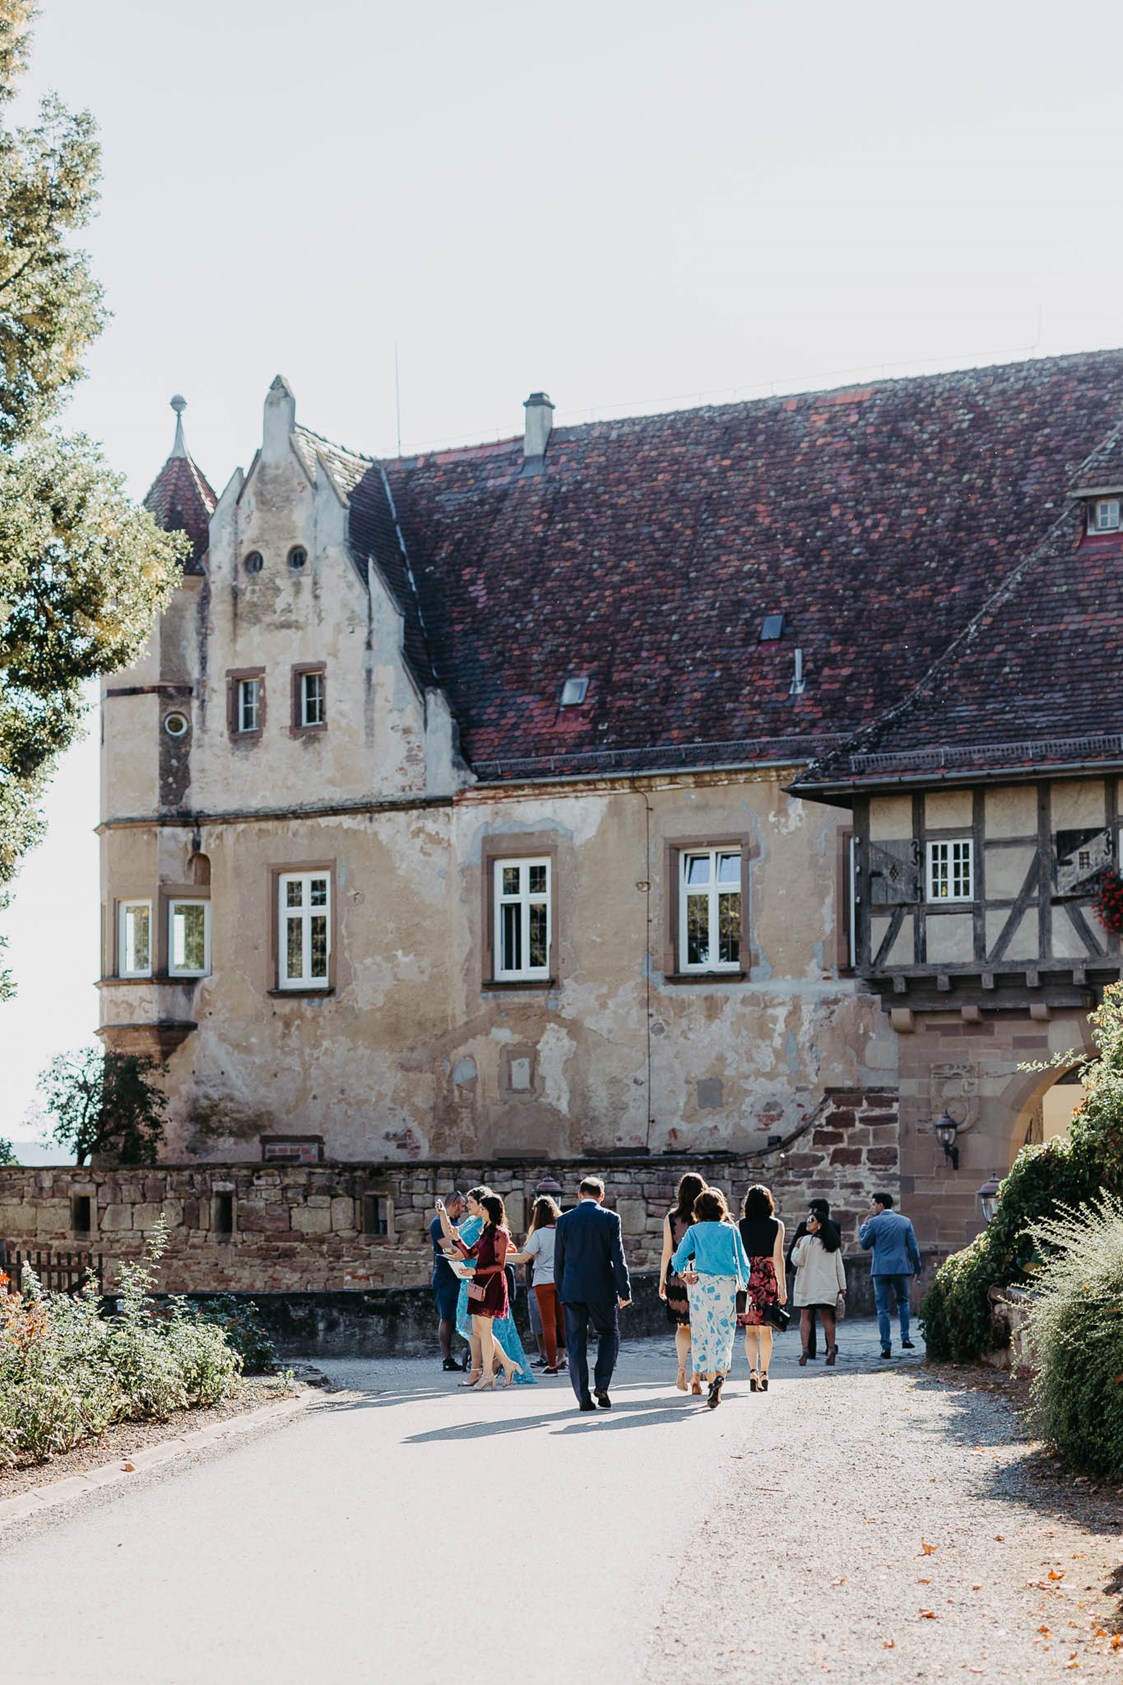 Hochzeitslocation: Die prachtvolle Einfahrt der Burg Stettenfels. - Burg Stettenfels